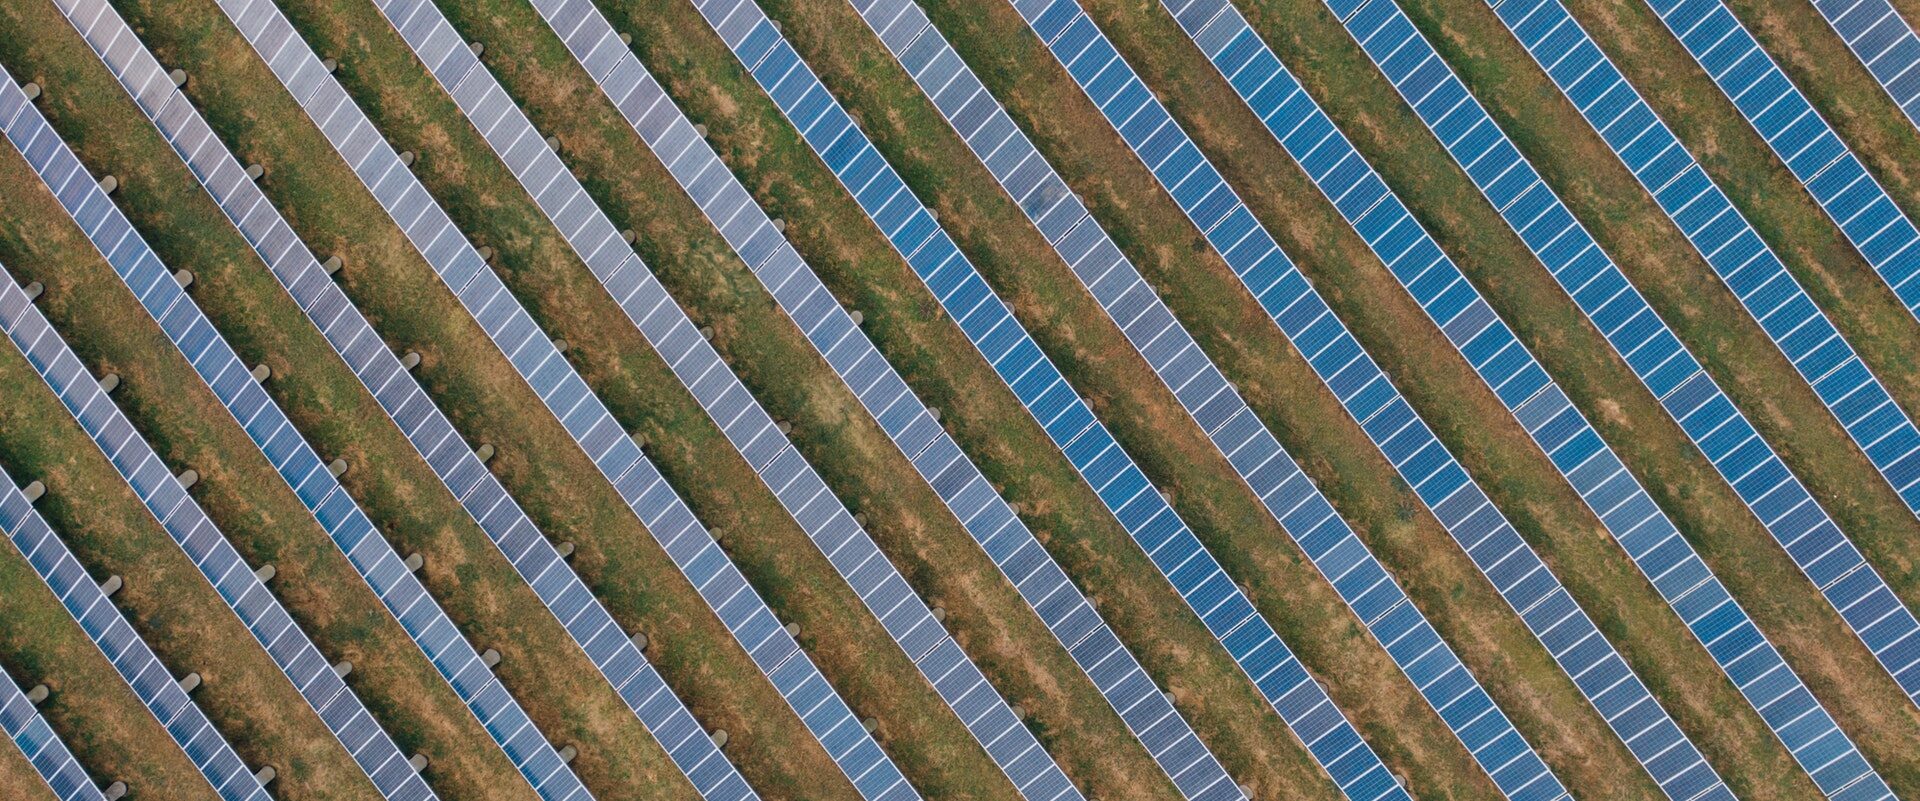 fazenda-solar-quais-os-beneficios